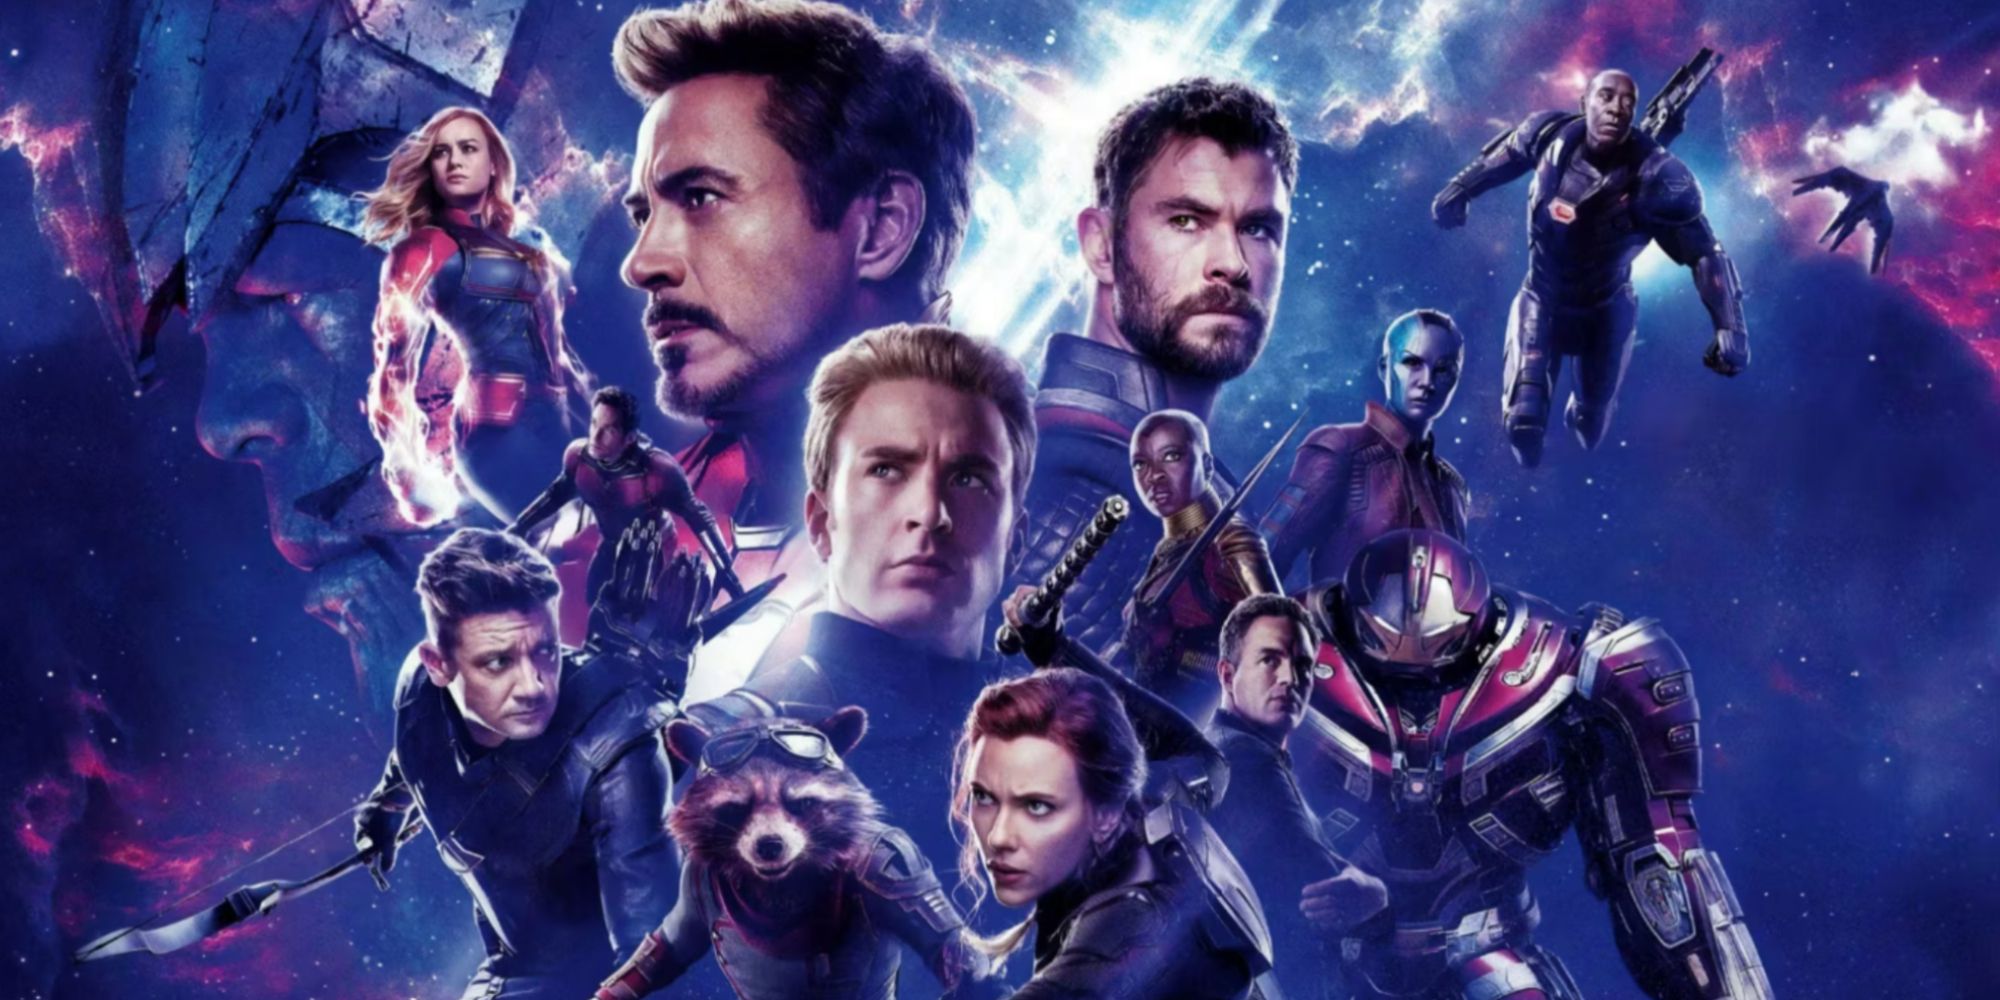 Affiche d'Avengers : Endgame comprenant des personnages comme Tony Stark de Robert Downey Jr., Captain America de Chris Evans, Black Widow de Scarlett Johansson et Thor de Chris Hemsworth.